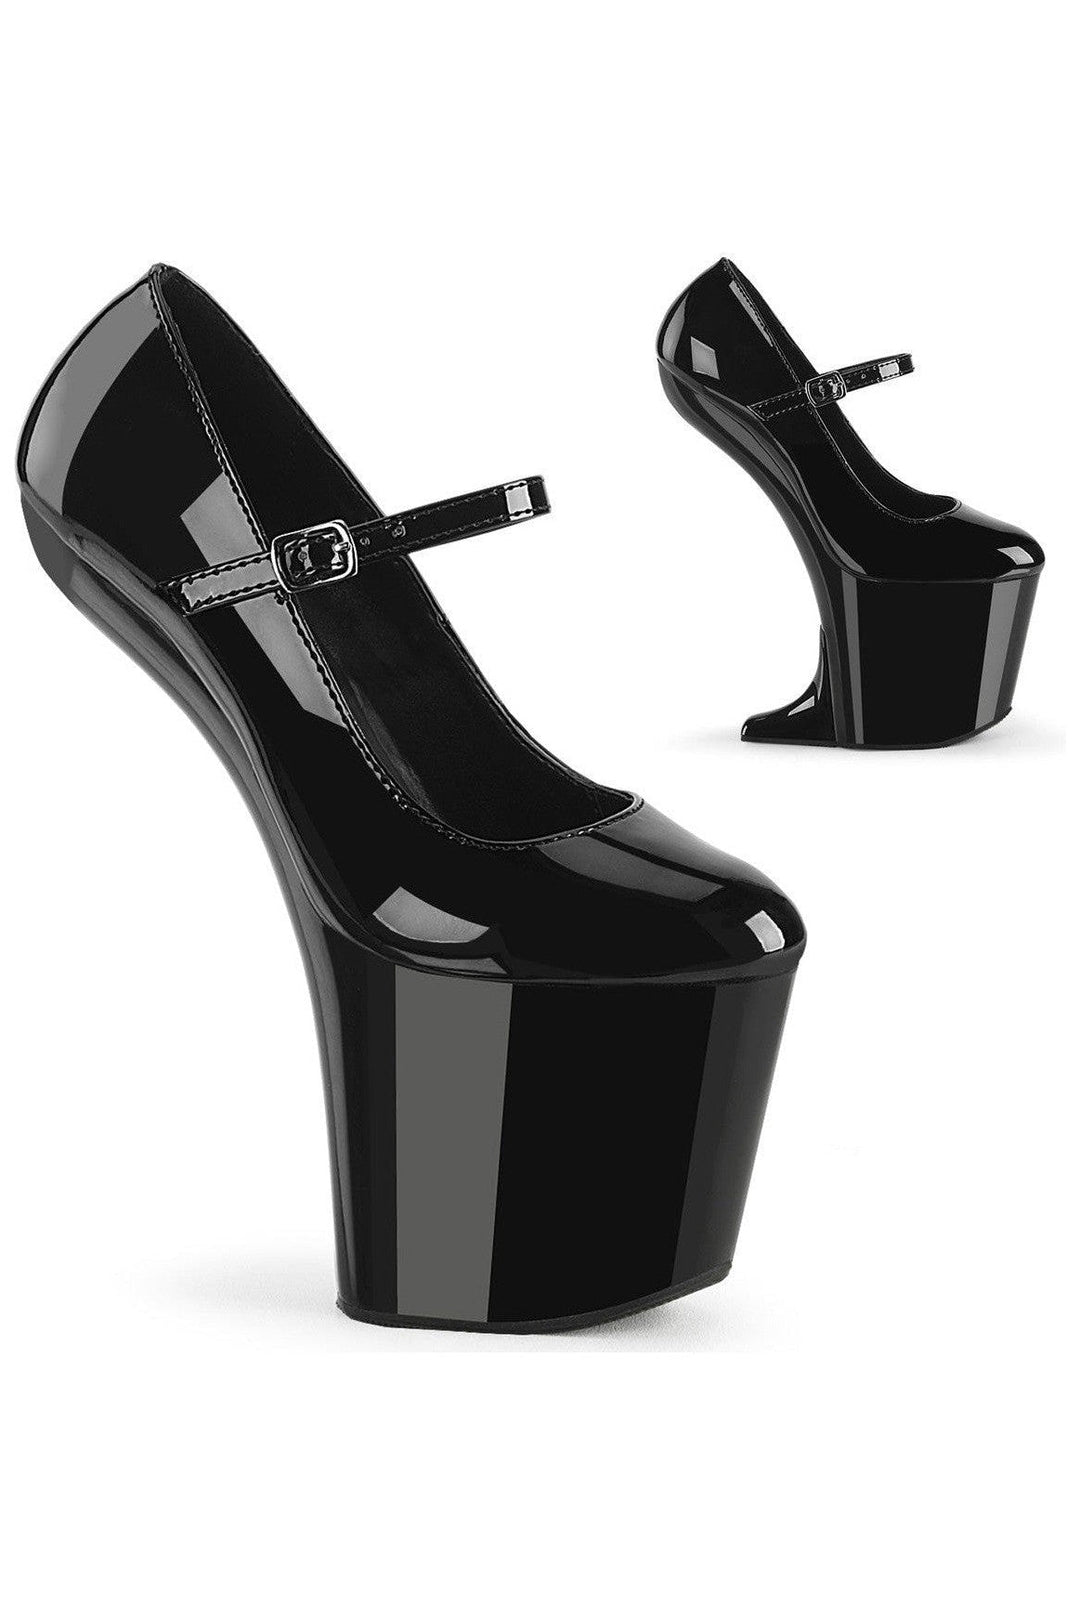 CRAZE-880 Black Patent Pump-Pumps- Stripper Shoes at SEXYSHOES.COM